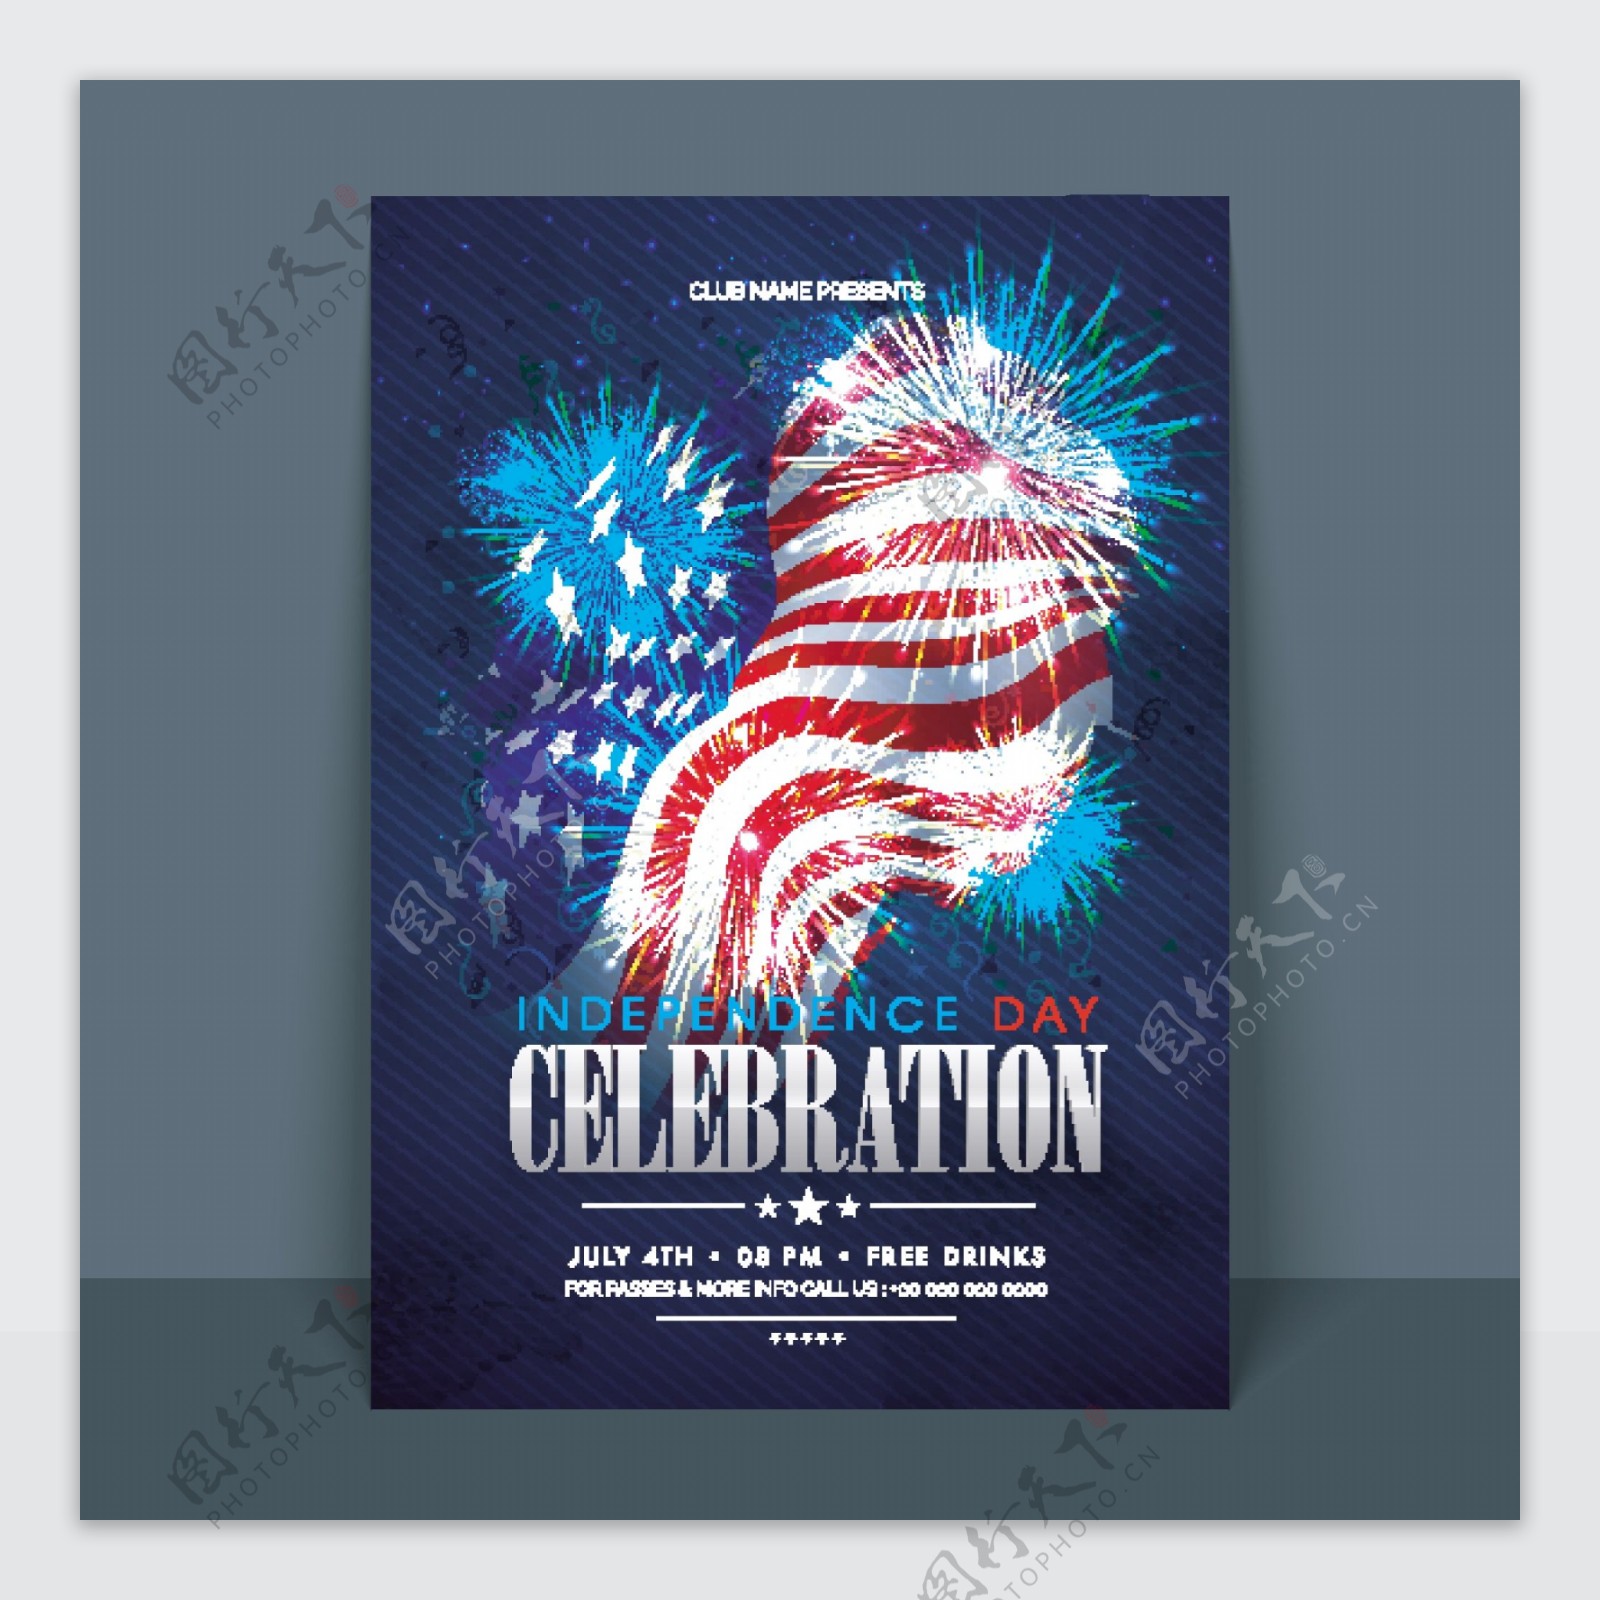 第四七月美国独立日庆祝活动的传单旗帜模板或请柬设计国旗和焰火